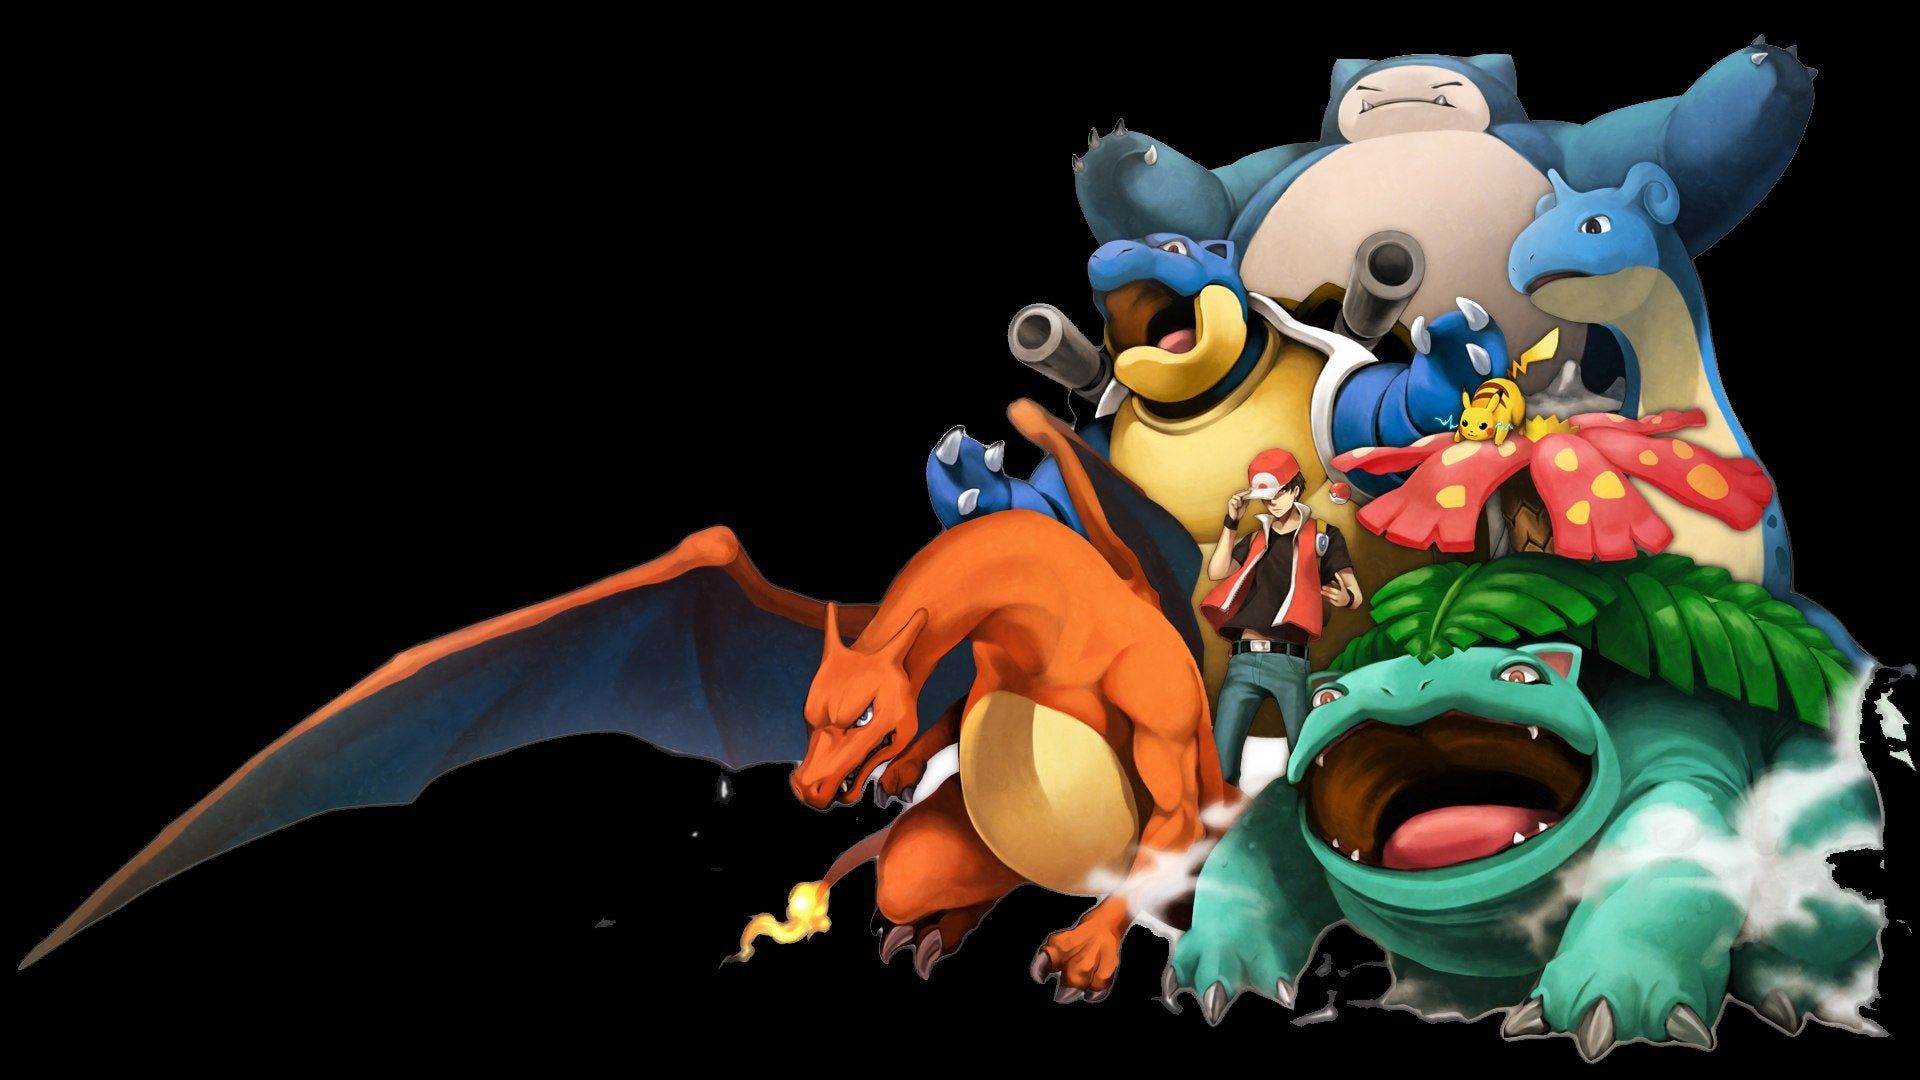 Papel de parede : Pokemon Primeira Geração, protagonista, evolução,  videogames, minimalismo, fundo preto, píxeis 1366x768 - LordAzuren -  1368419 - Papel de parede para pc - WallHere